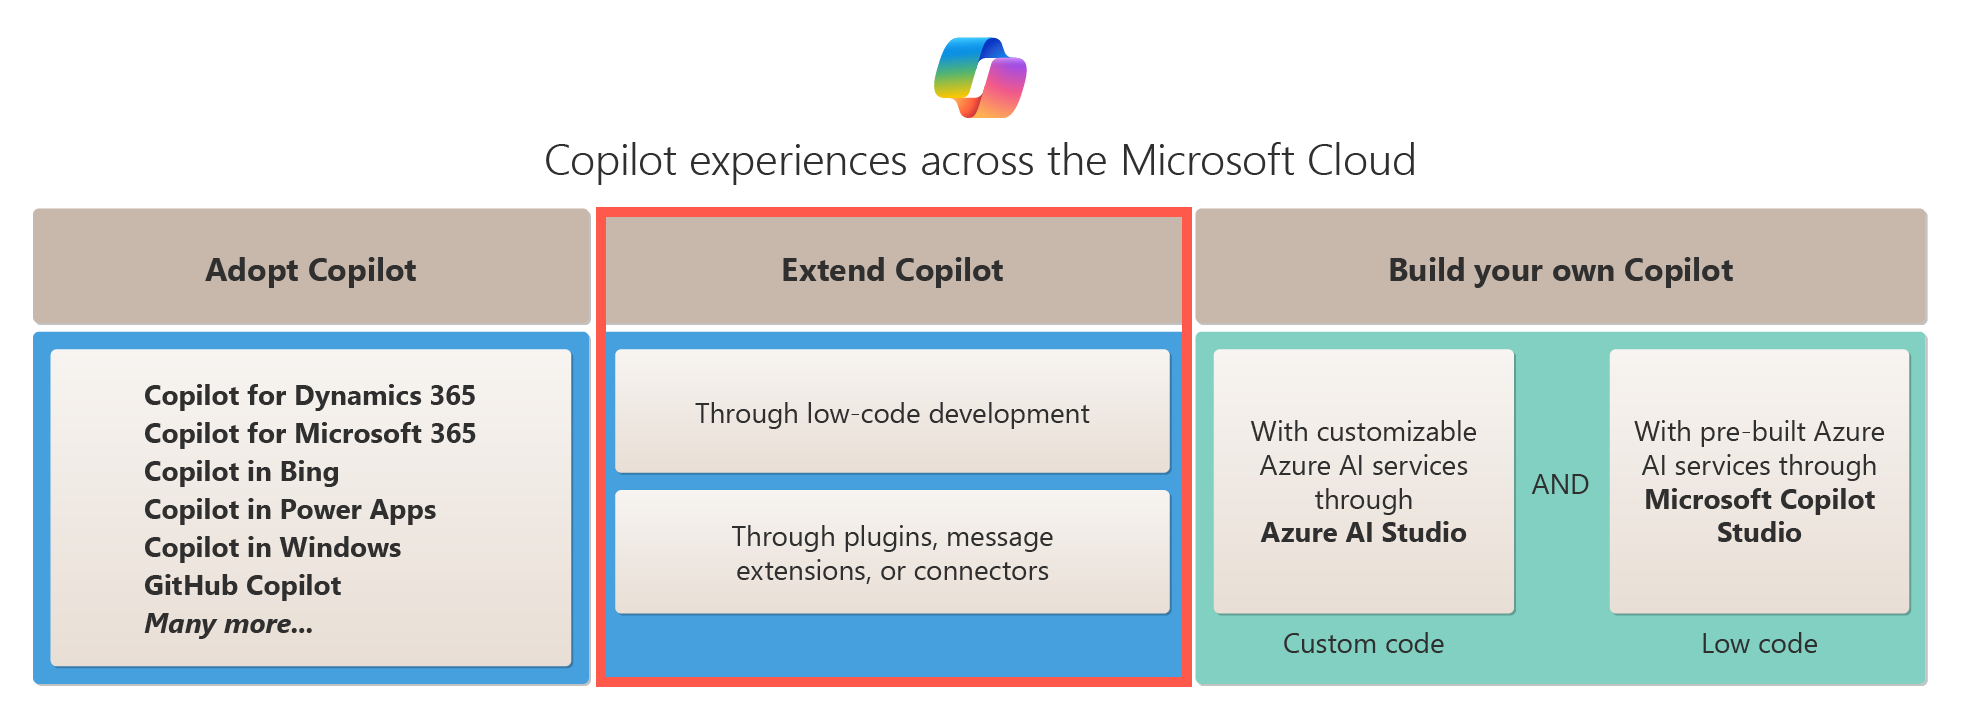 此圖顯示跨 Microsoft Cloud 的 Copilot 擴充選項。